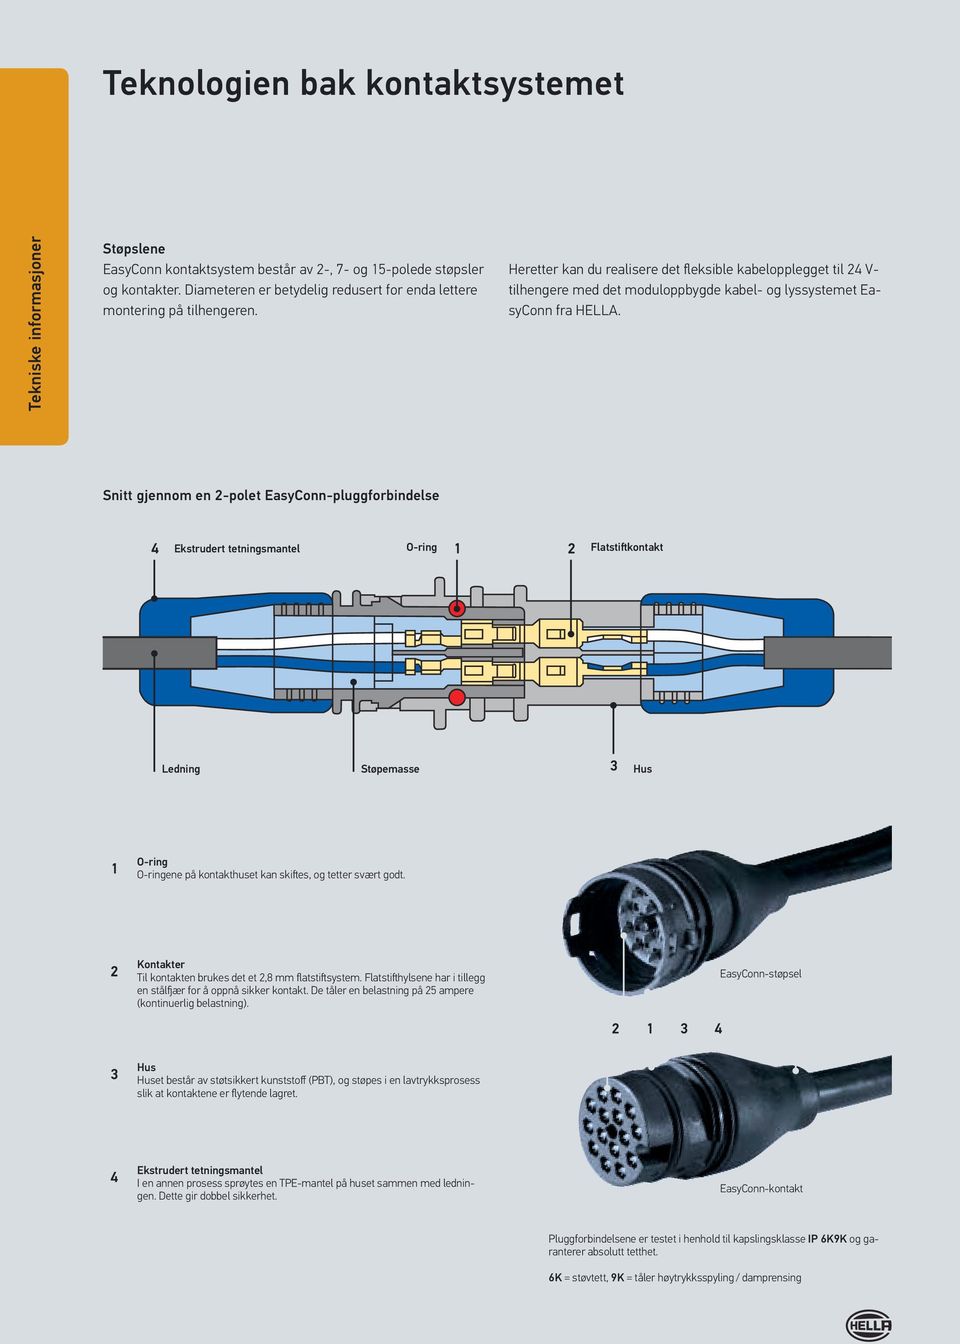 Heretter kan du realisere det fleksible kabelopplegget til 24 V- tilhengere med det moduloppbygde kabel- og lyssystemet EasyConn fra HELLA.